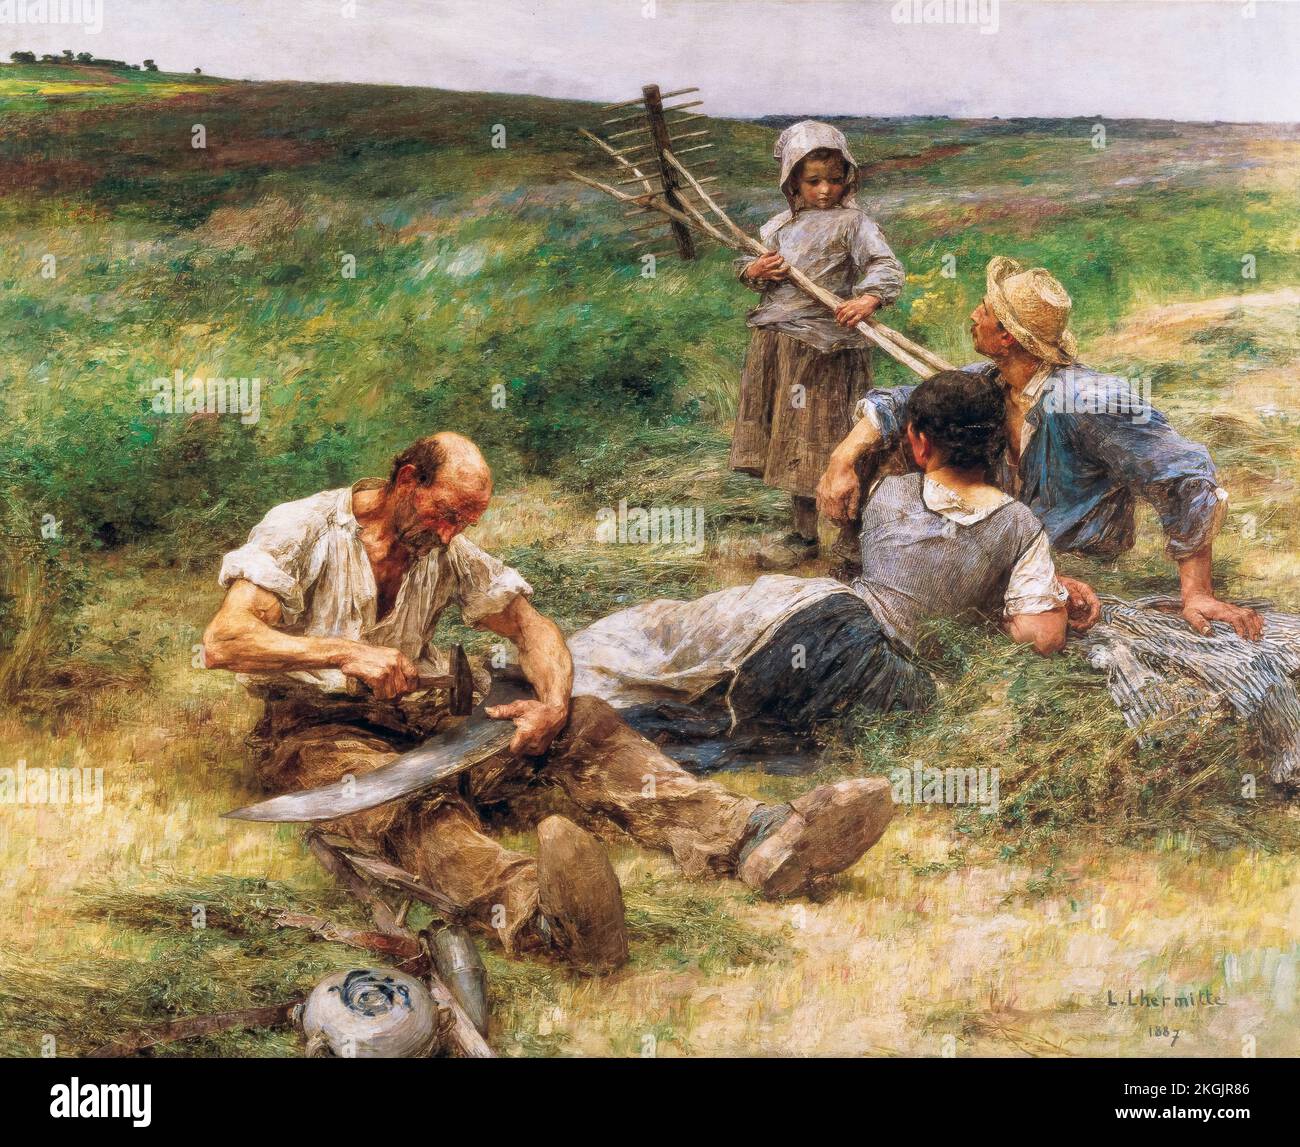 Leon Augustin Lhermitte, Haymaking, huile sur toile, 1887 Banque D'Images